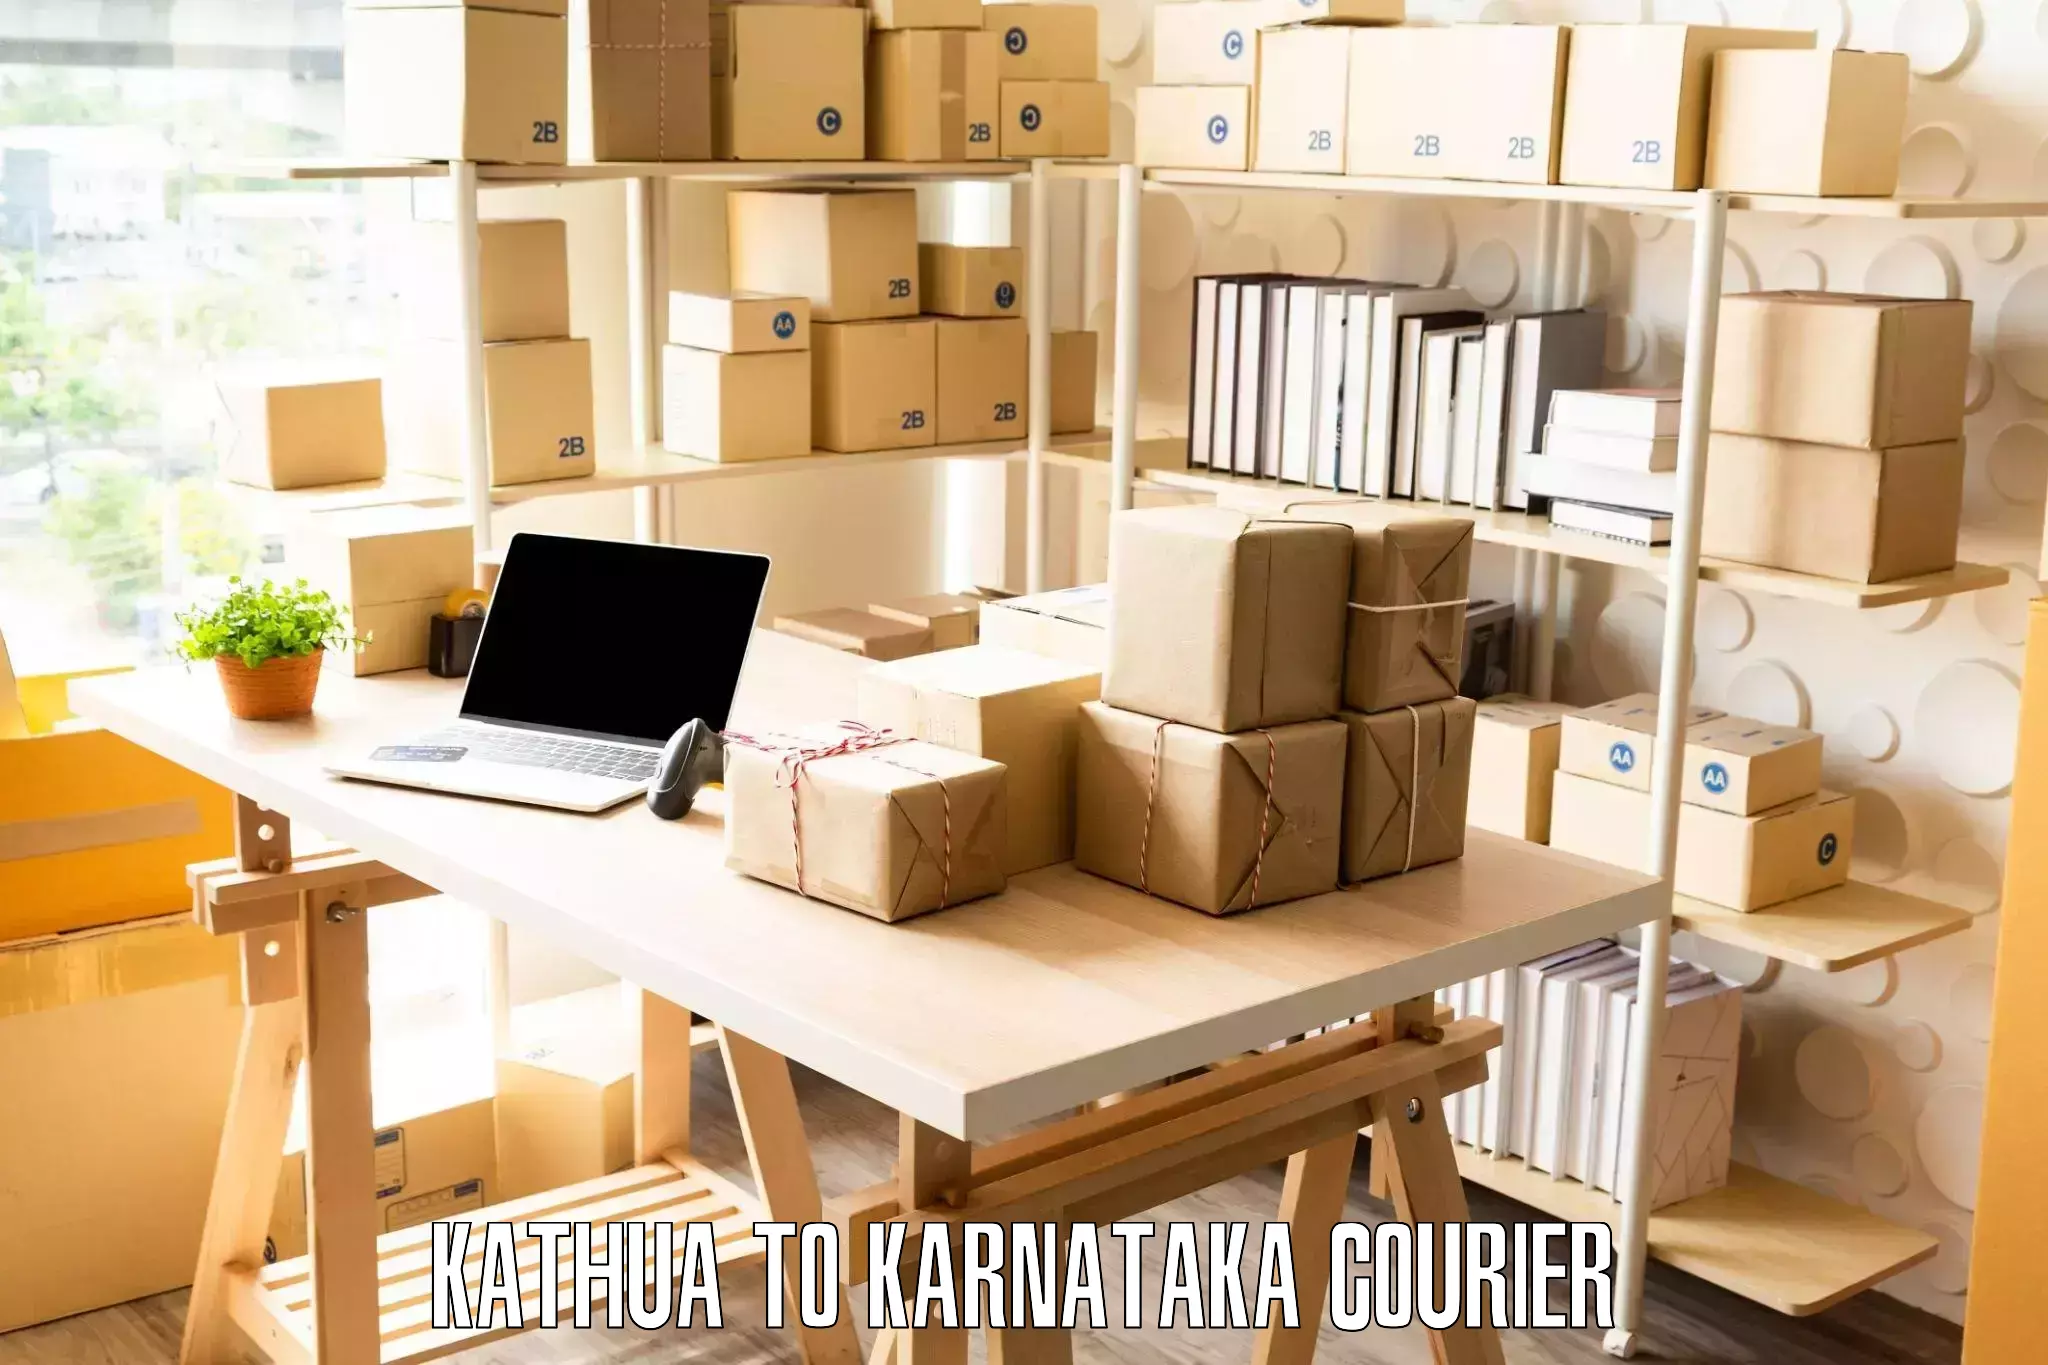 Home furniture moving Kathua to Karnataka